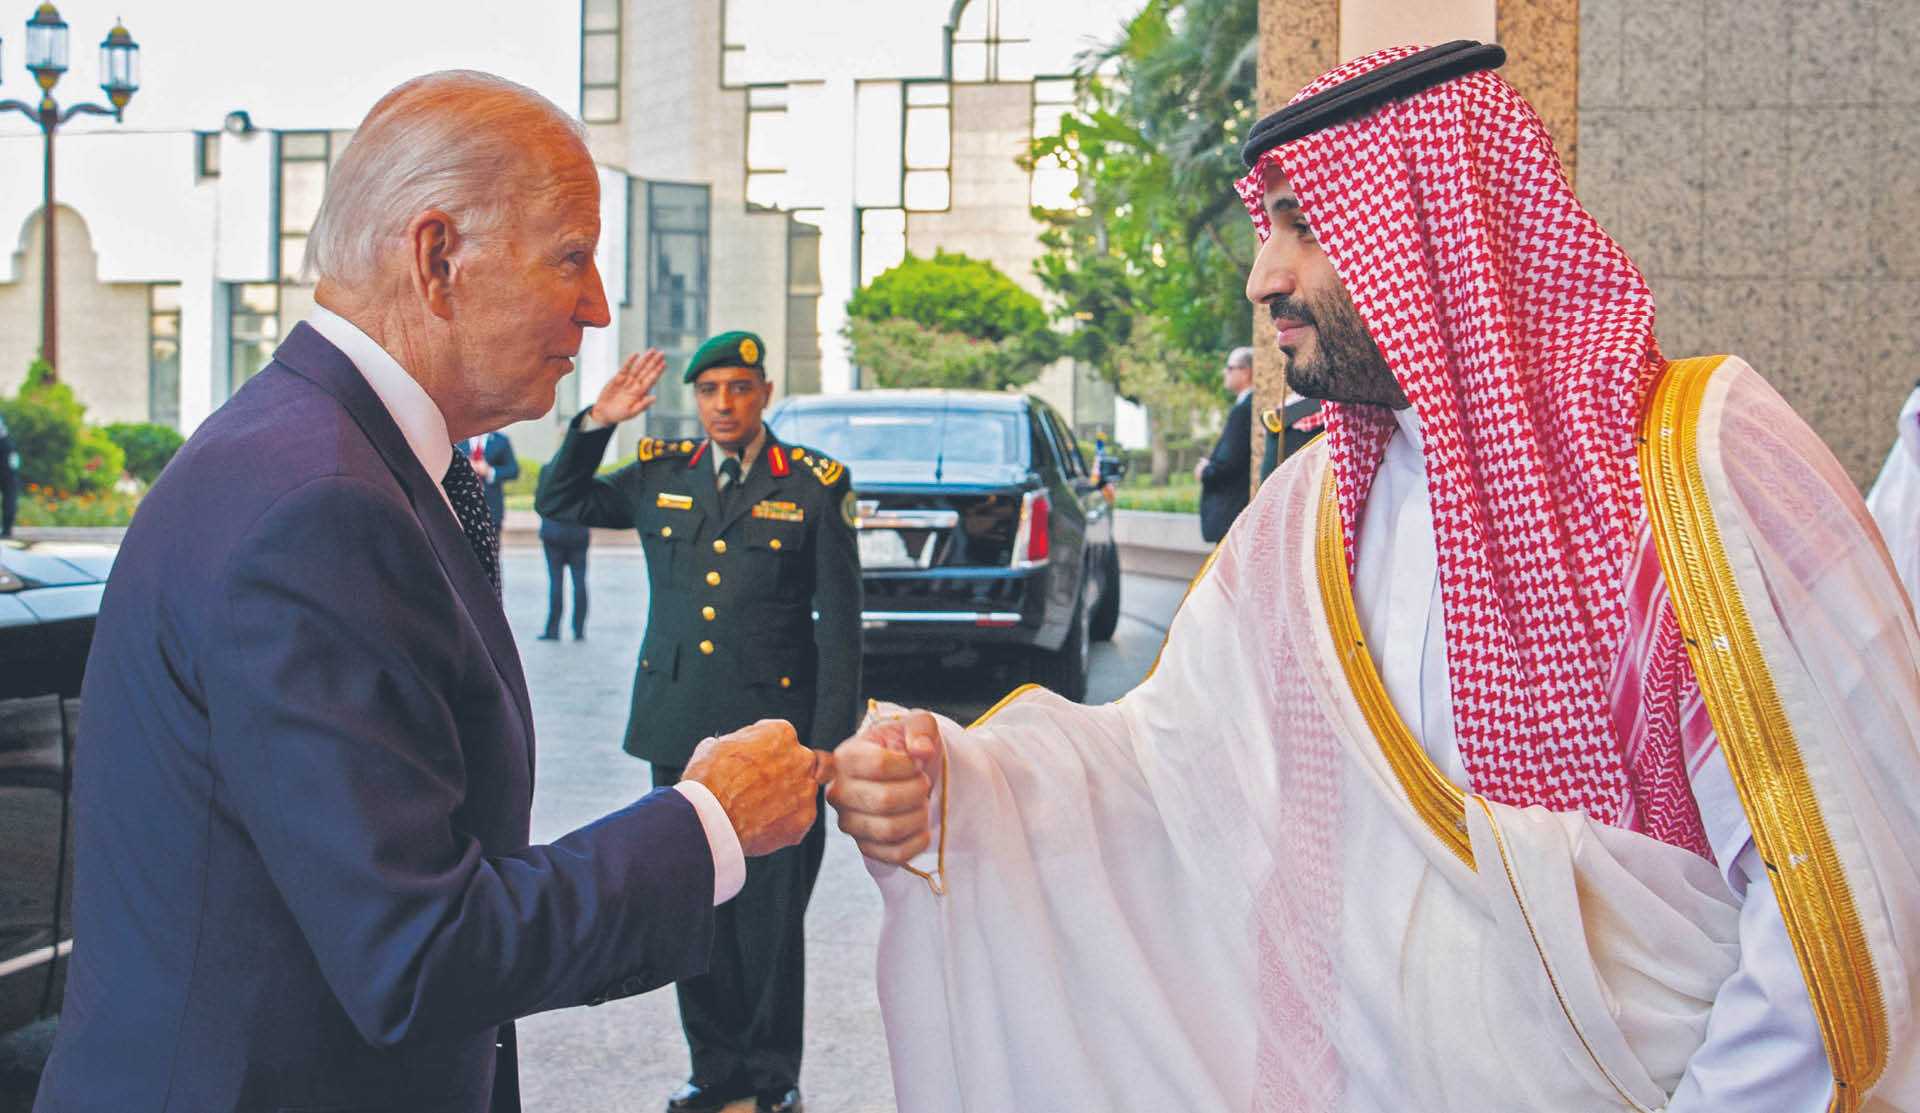 Przywódca Arabii Saudyjskiej książę Muhammad ibn Salman potwierdził w sobotę założenie, zgodnie z którym produkcja ropy zostanie zwiększona do maksymalnie 13 mln baryłek dziennie do 2027 r. Podkreślił jednak, że nie będzie w stanie dalej zaspokajać zwiększonego popytu